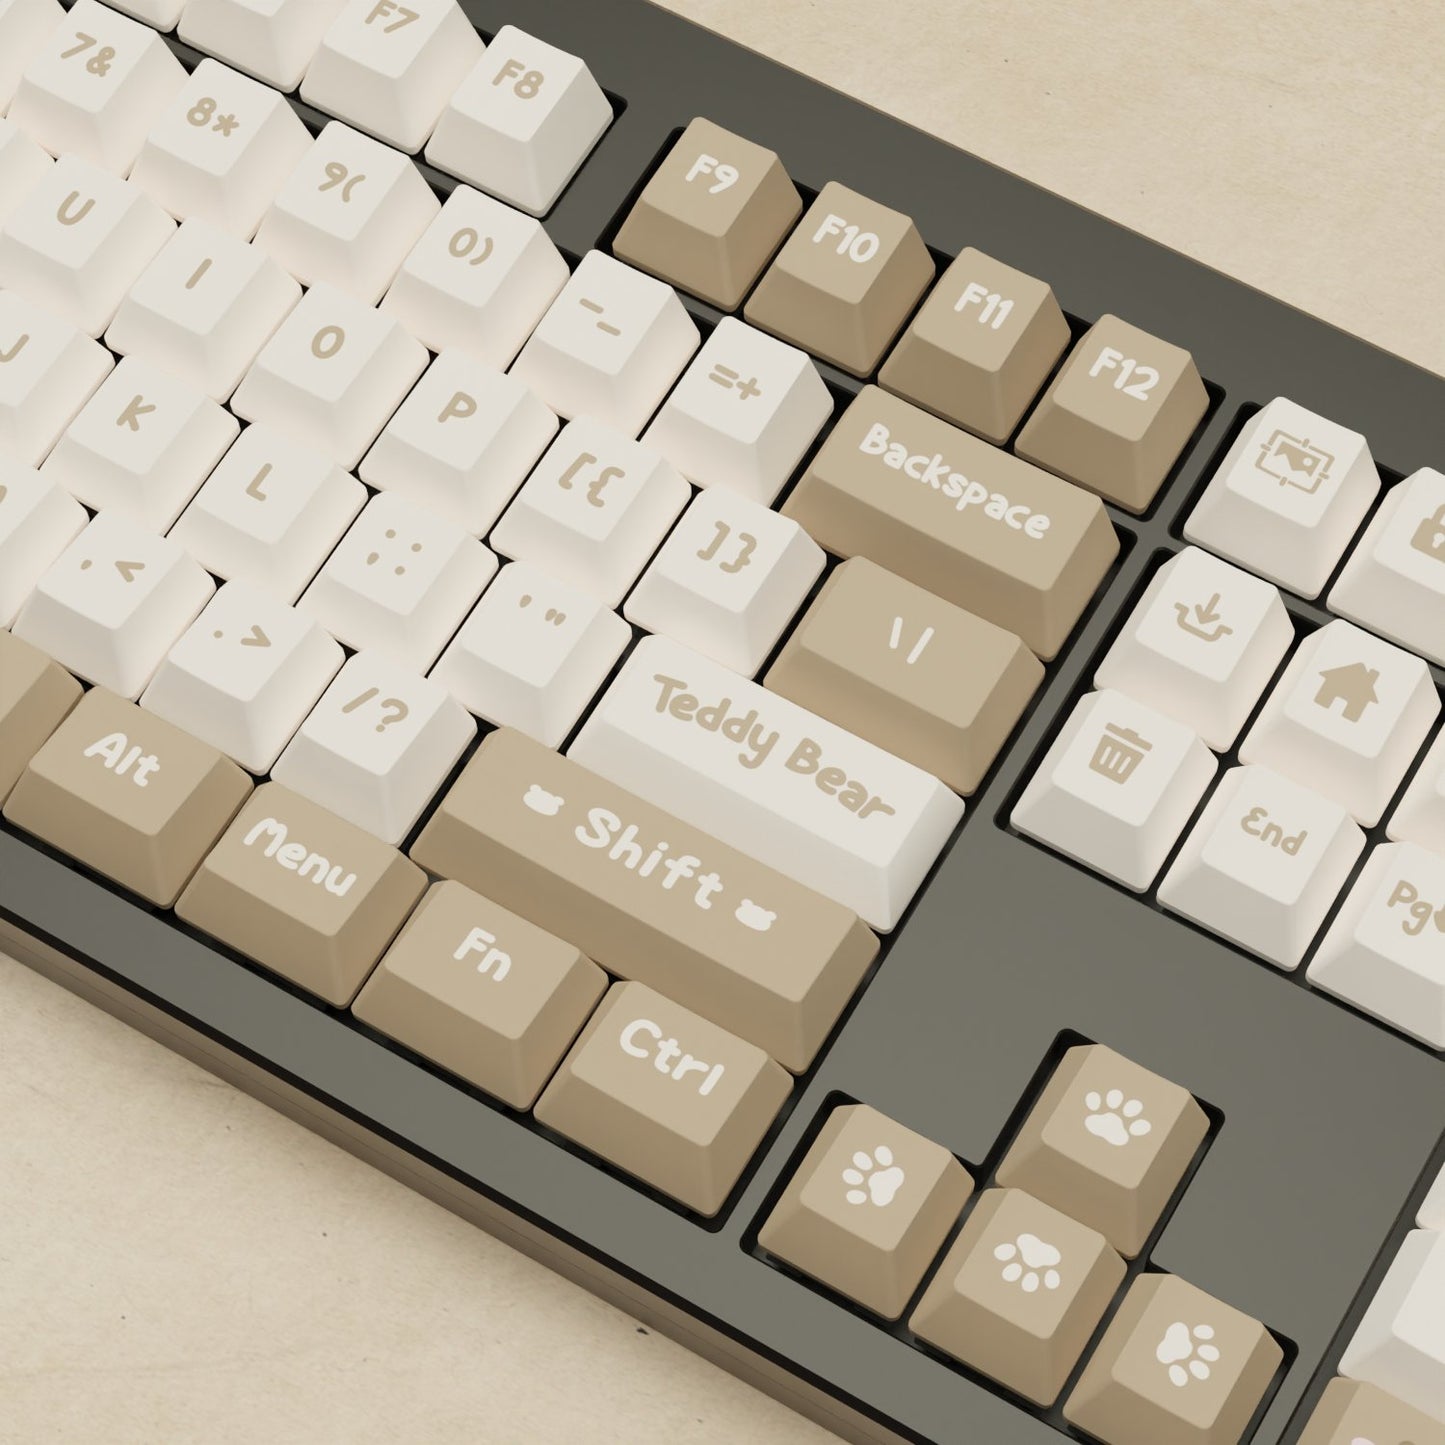 Monsgeek M5 - 100% Teddy Mechanical Keyboard - Goblintechkeys